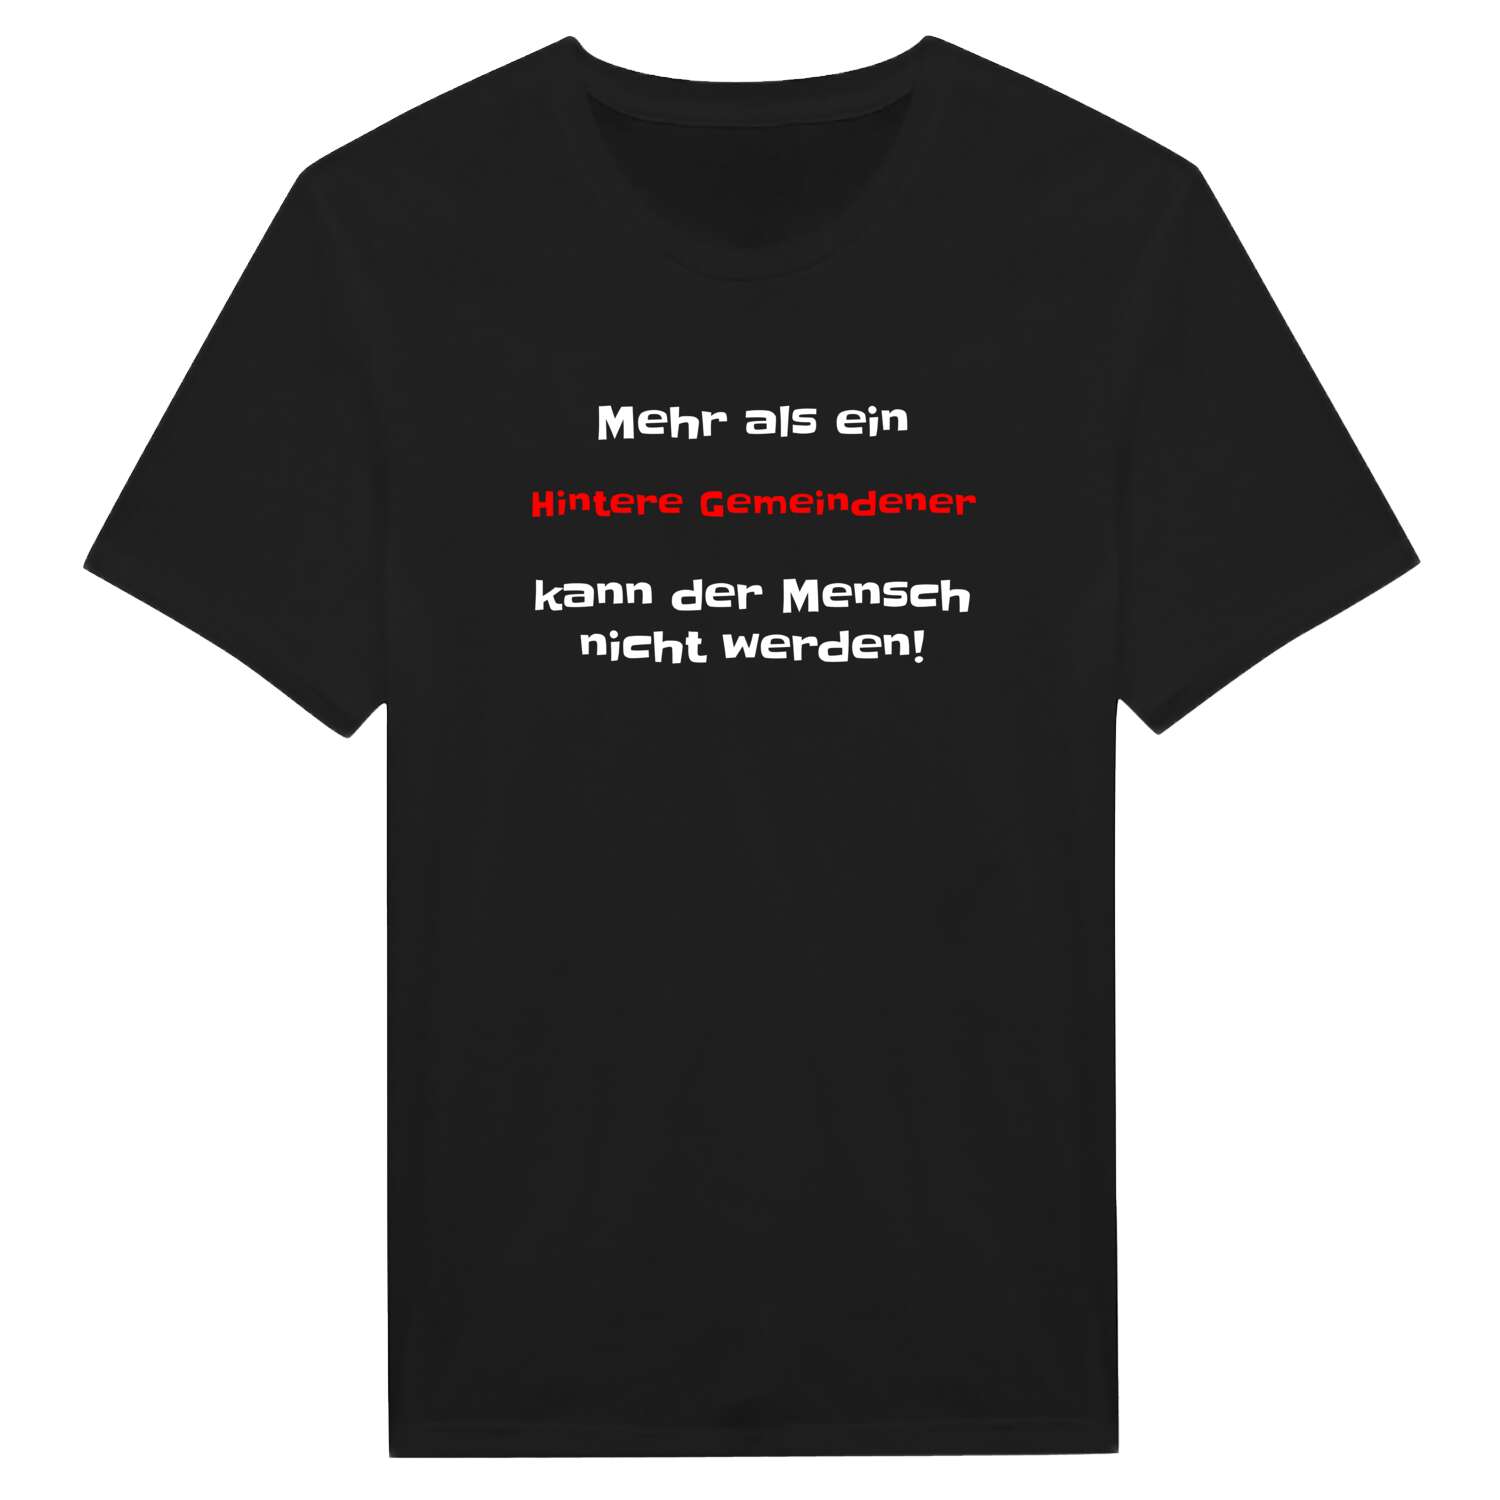 Hintere Gemeinde T-Shirt »Mehr als ein«